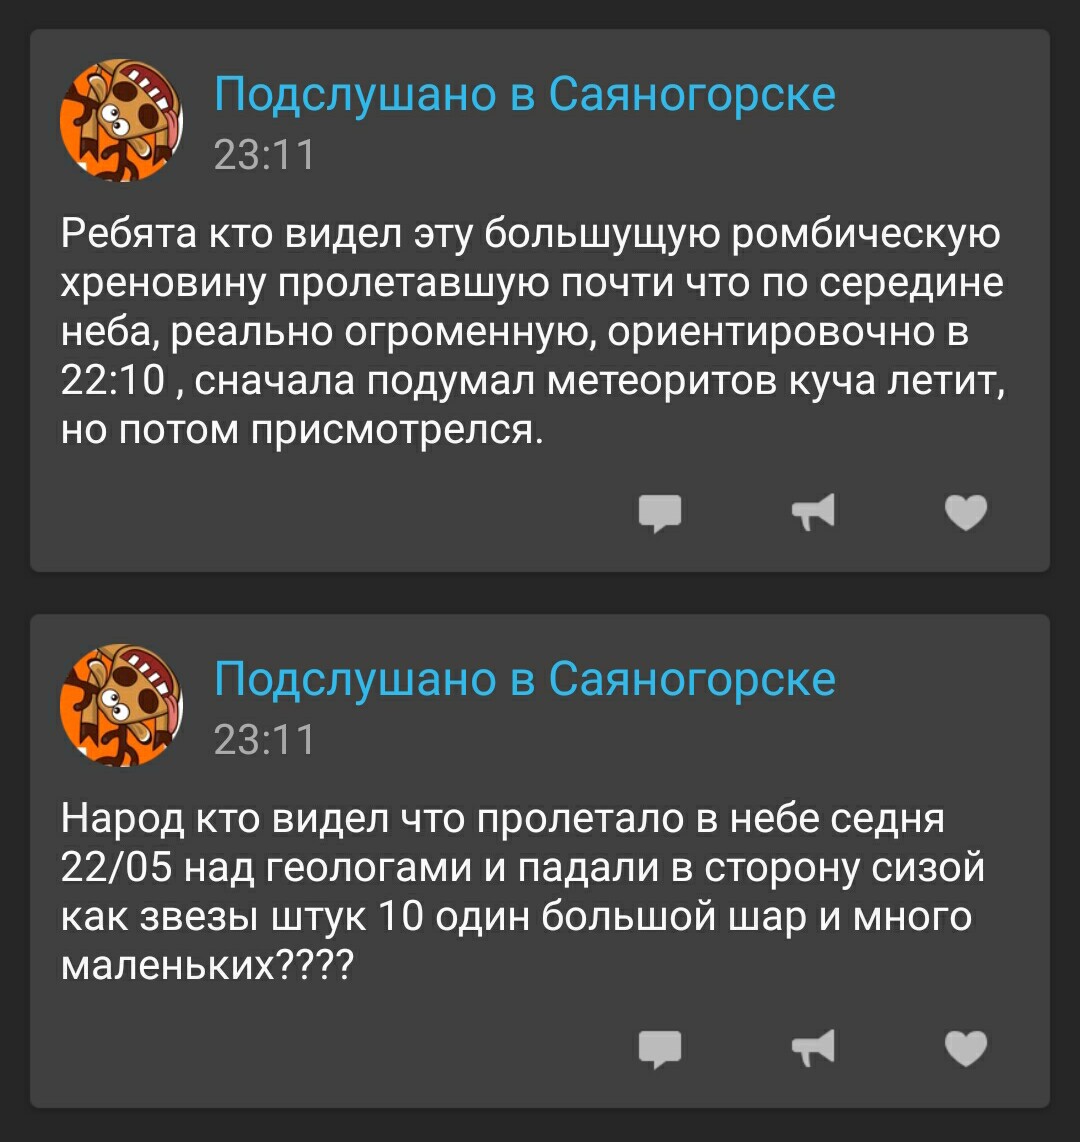 Саяногорск Инфо - screenshot_2016-12-01-23-14-11_1.jpg, Скачано: 569